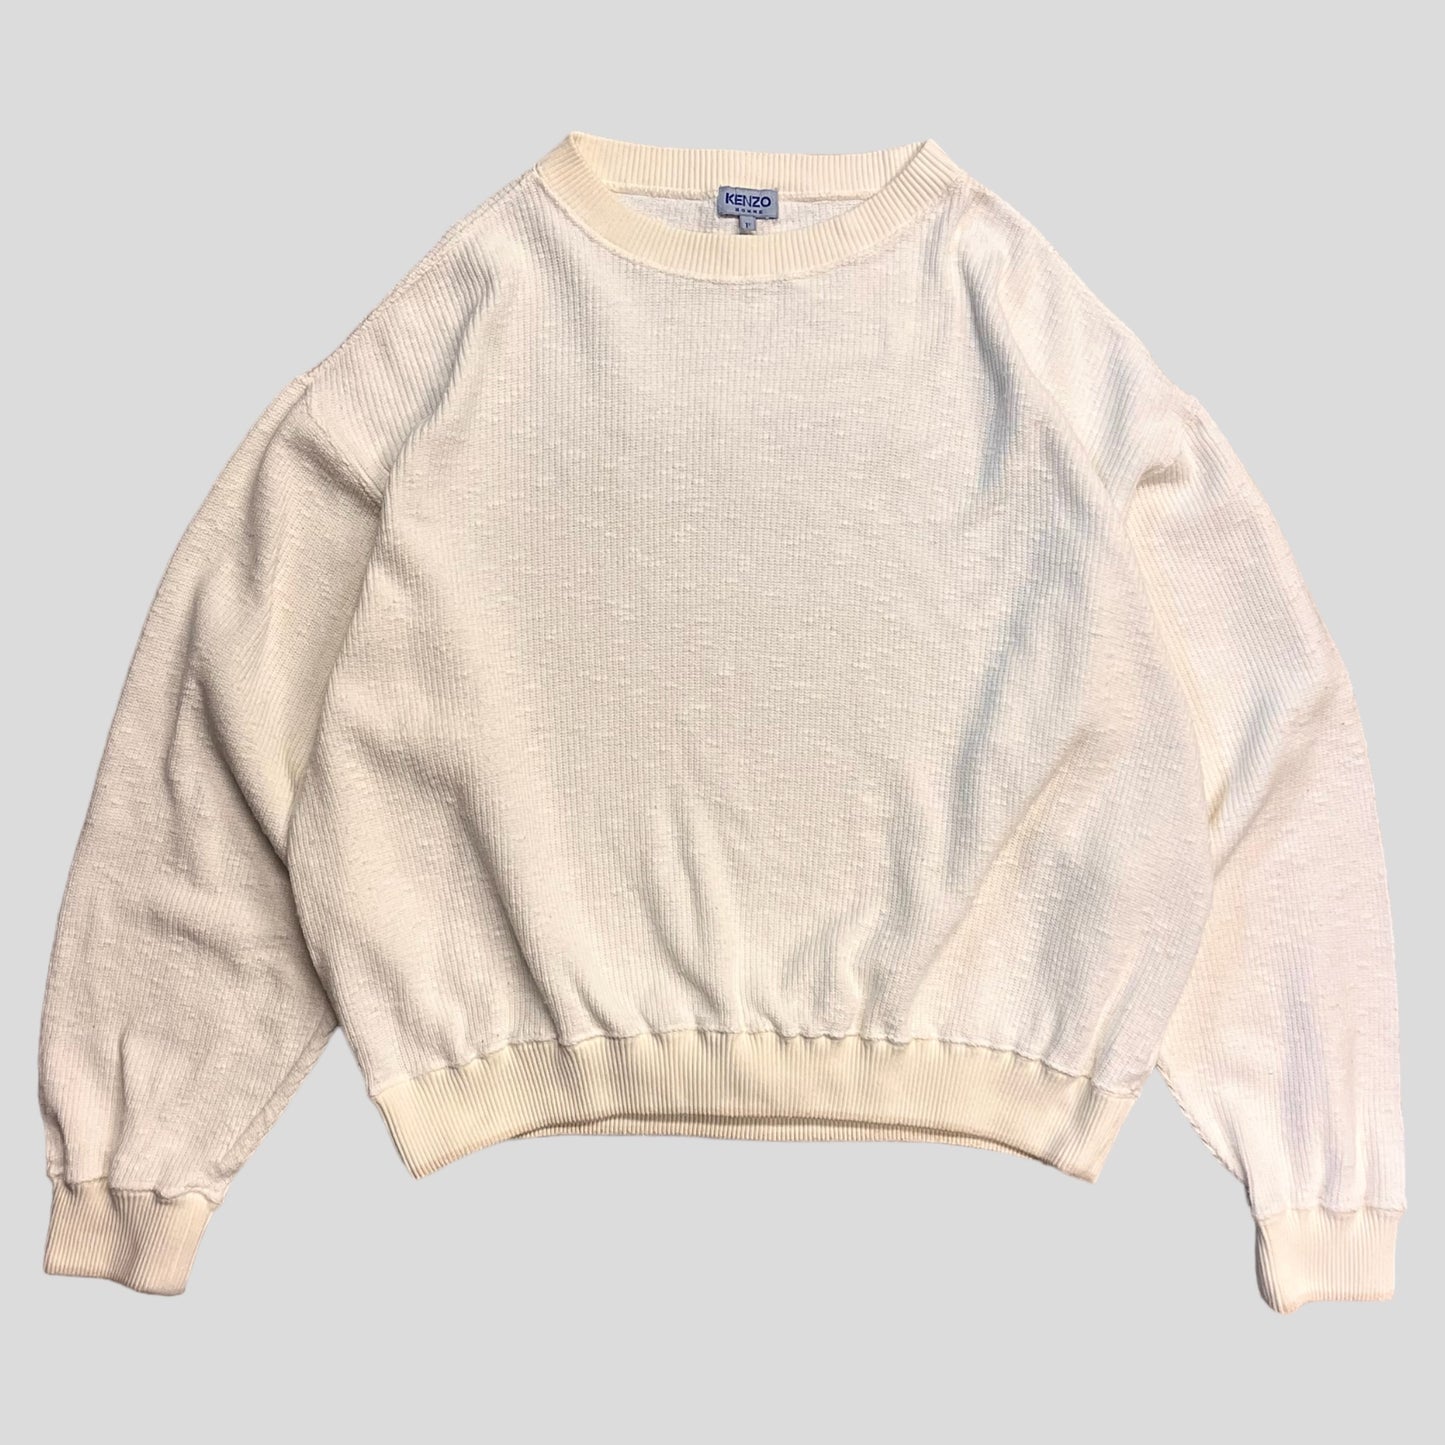 KENZO HOMME cotton sweater White